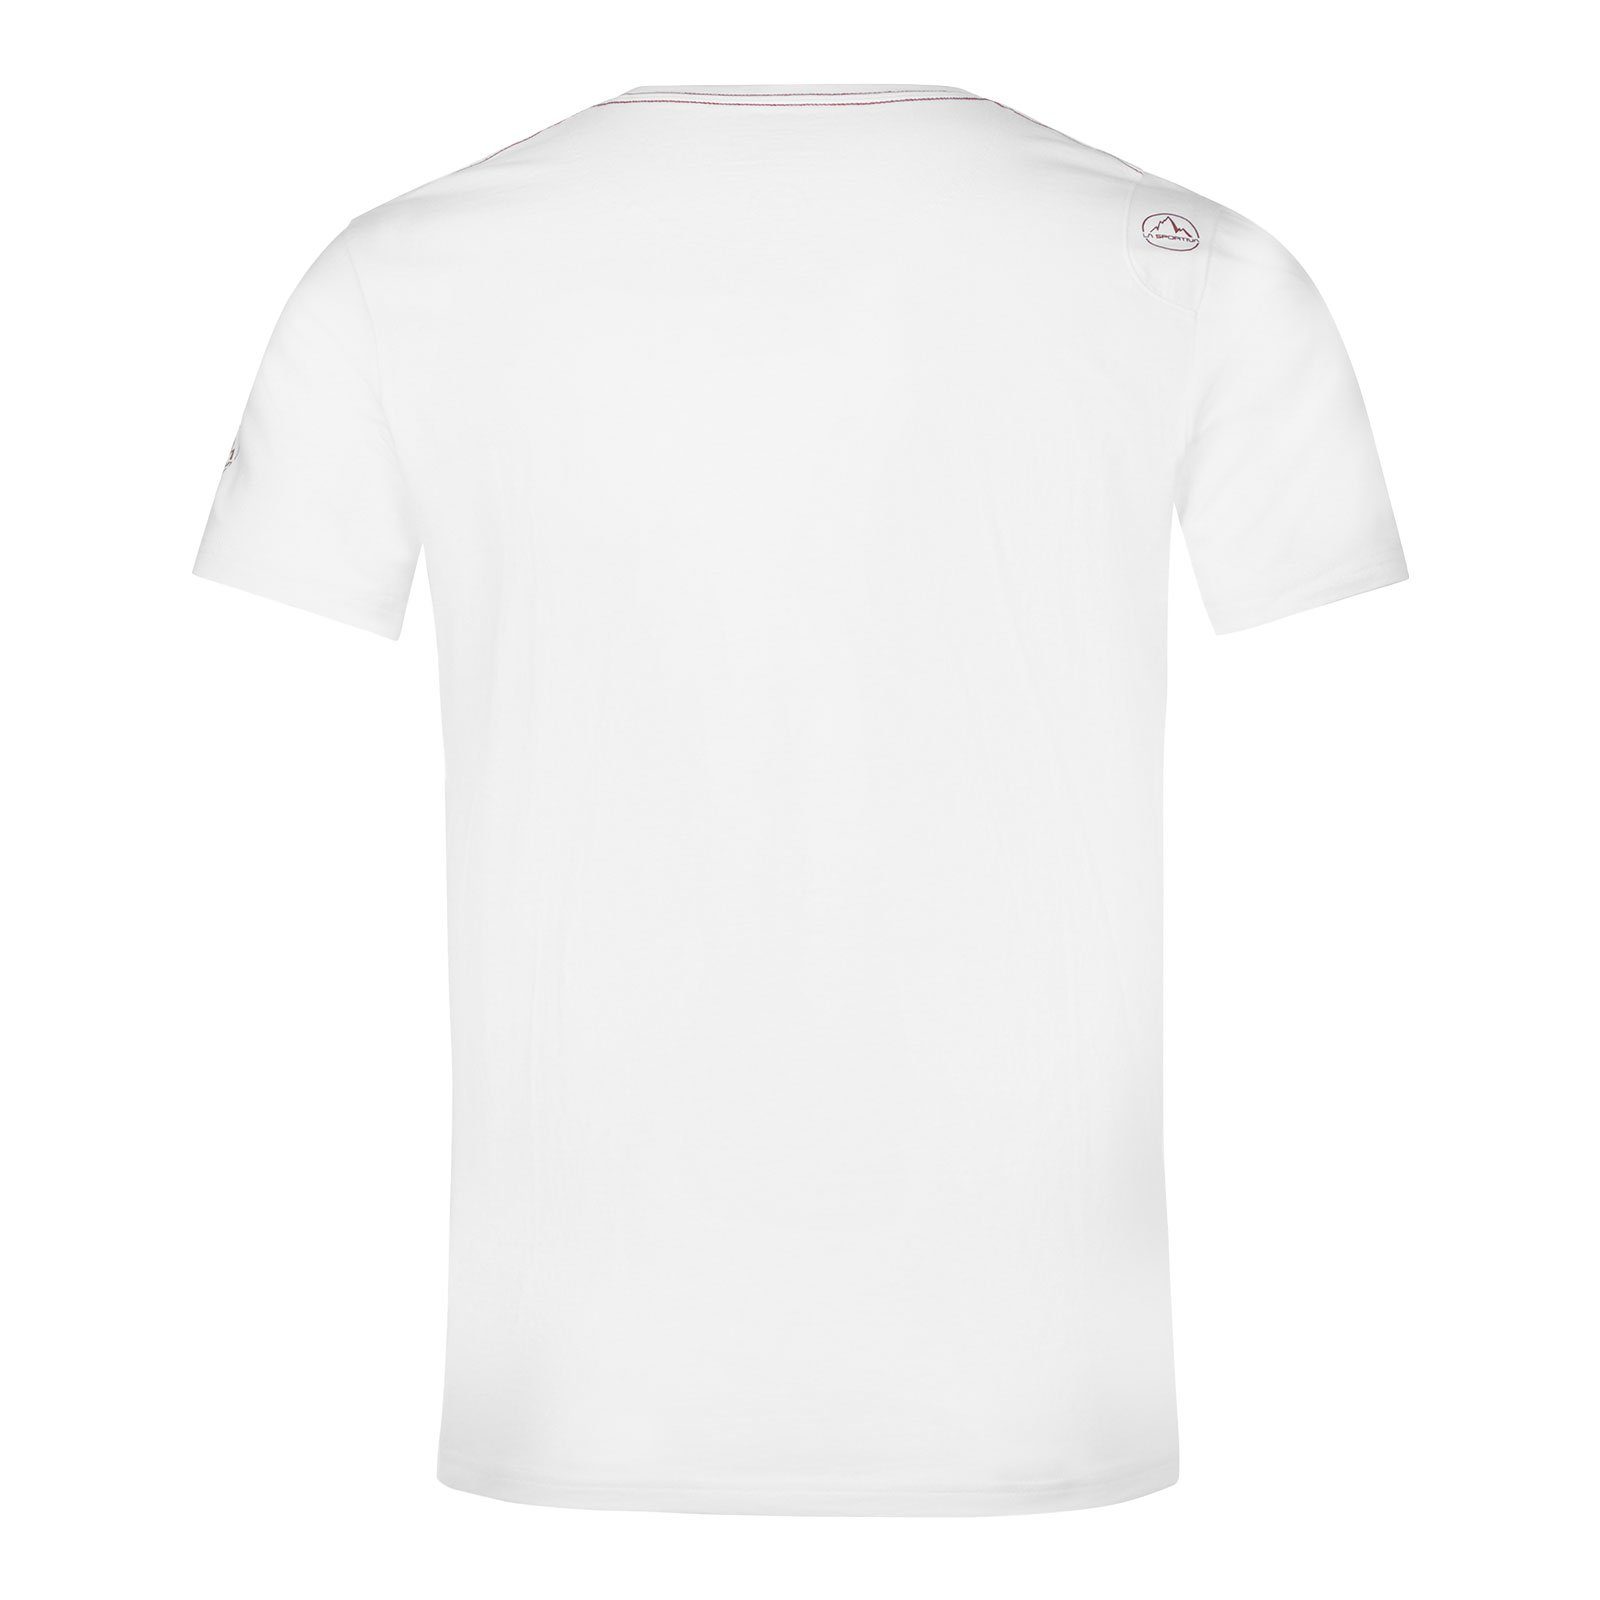 Baumwolle sangria aus T-Shirt Van white Sportiva La organischer / 000320 100% M